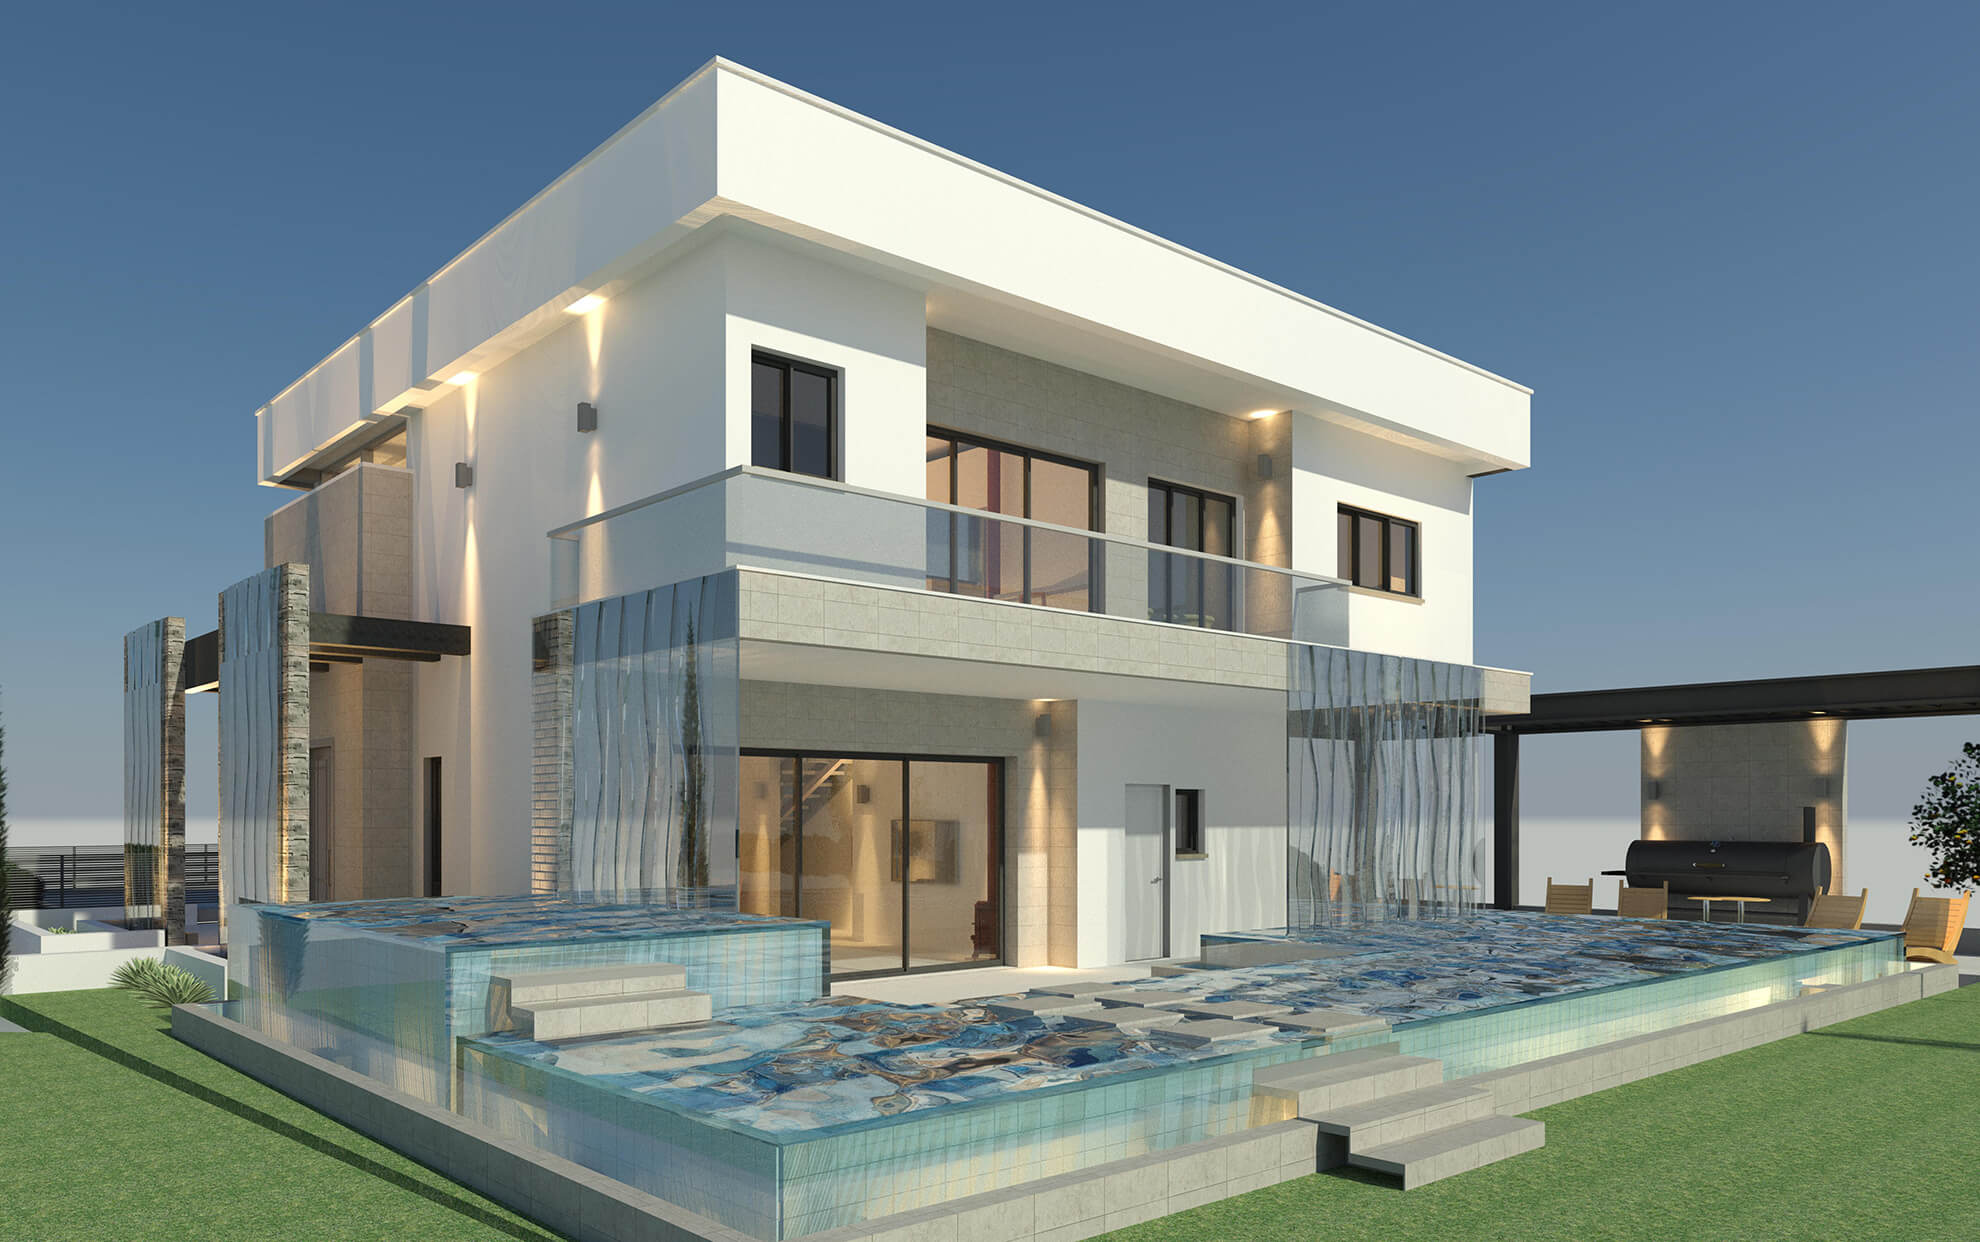 בית עם בריכת שחייה בעמק הירדן  - דניאל ב. אדריכלות